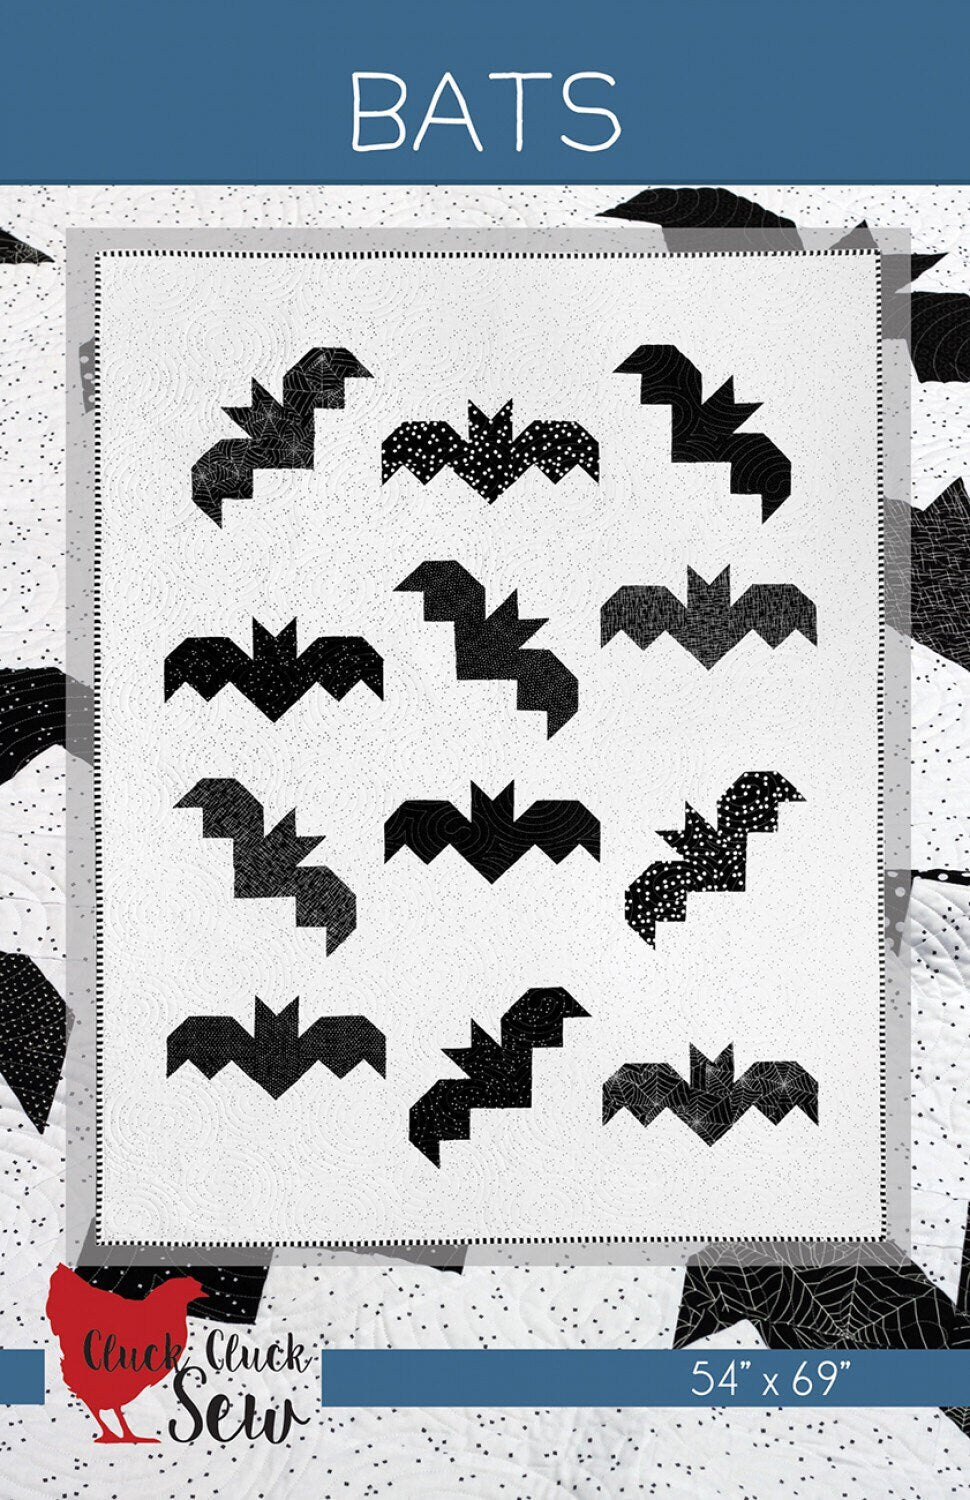 Bats Quilt Pattern - Cluck Cluck Sew - Fat Quarter Friendly - 54” x 69”